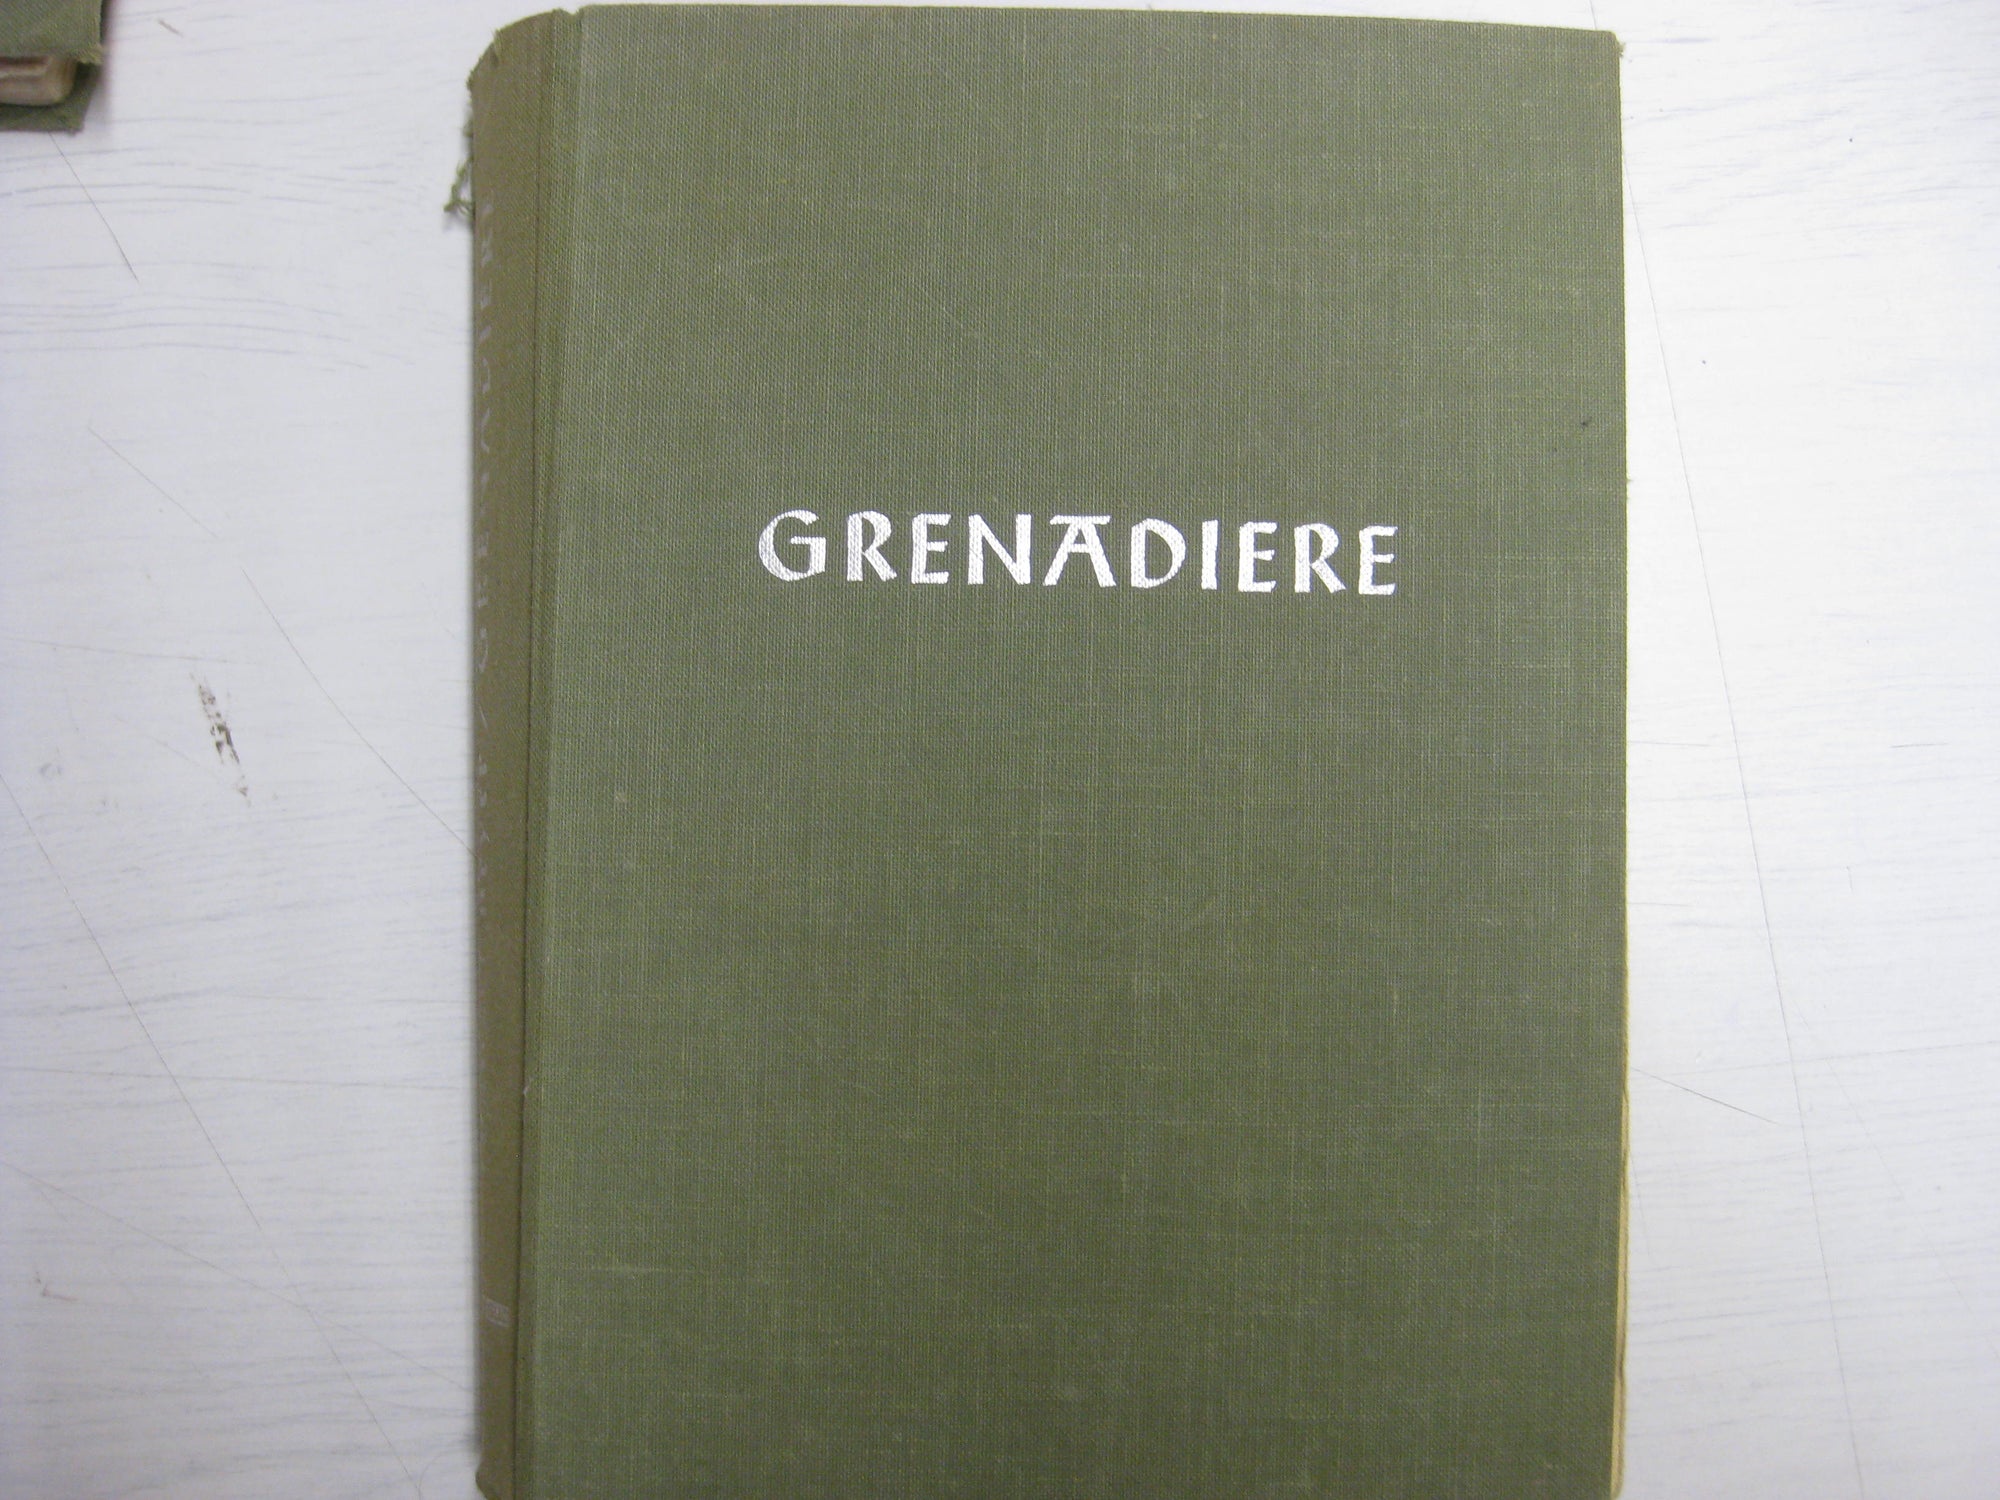 GRENADIERE. Buch aus dem persönlichen Besitz eines Sturmgeschützkommandanten der LSSAH